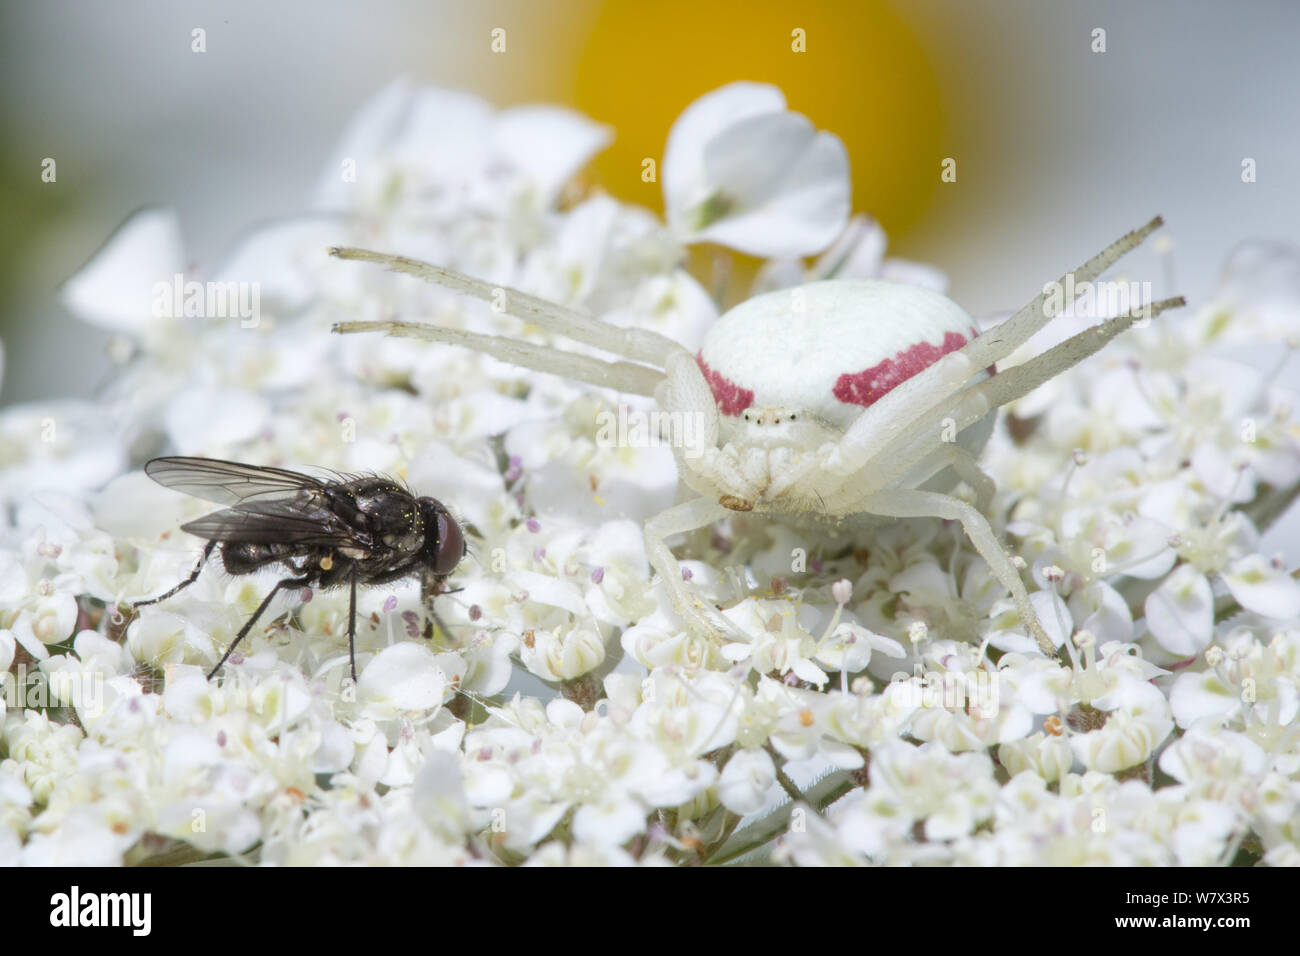 Weiße Form der Goldrute Crab Spider (Misumenia vatia) auf umbellifer Blumen Vorbereitung eine Fliege Hinterhalt getarnt. Devon, UK. Juni. Stockfoto